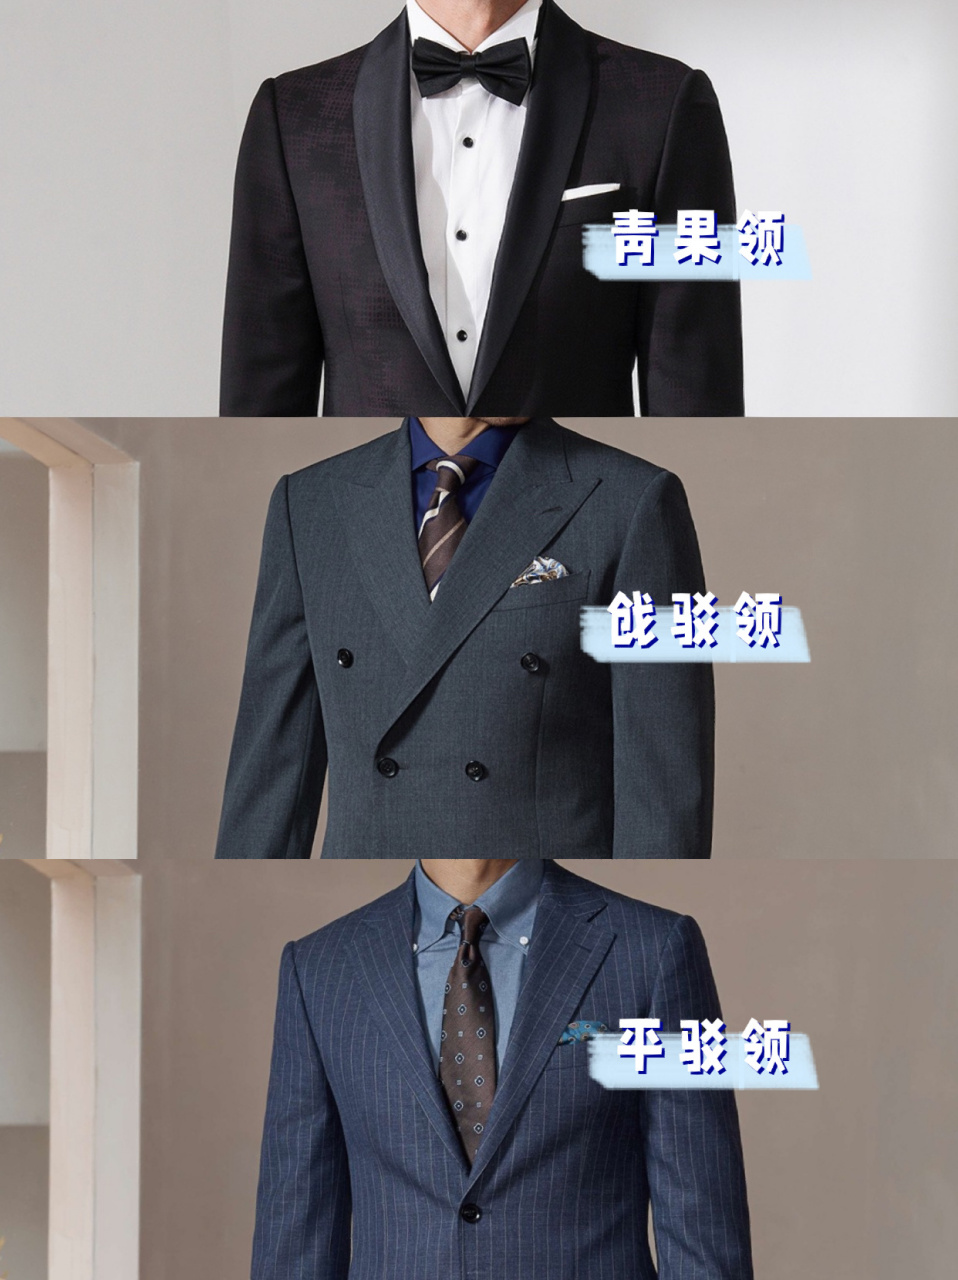 西装的三种领型图片